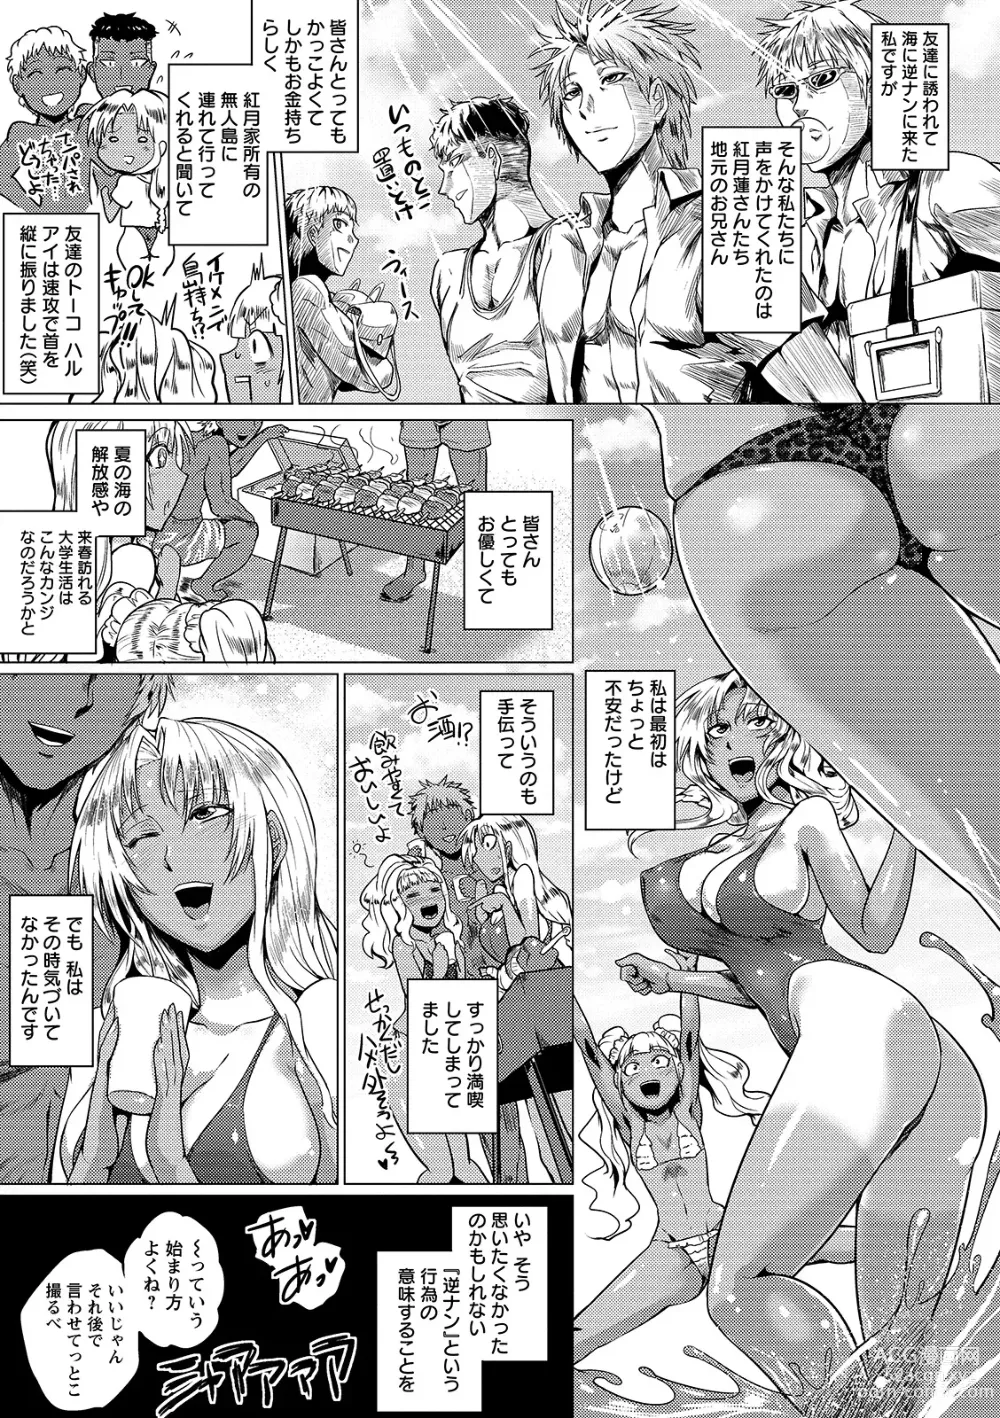 Page 9 of manga Hazukashime no Ran Tanetsuke Gokumon Sikyuu Ikimawashi